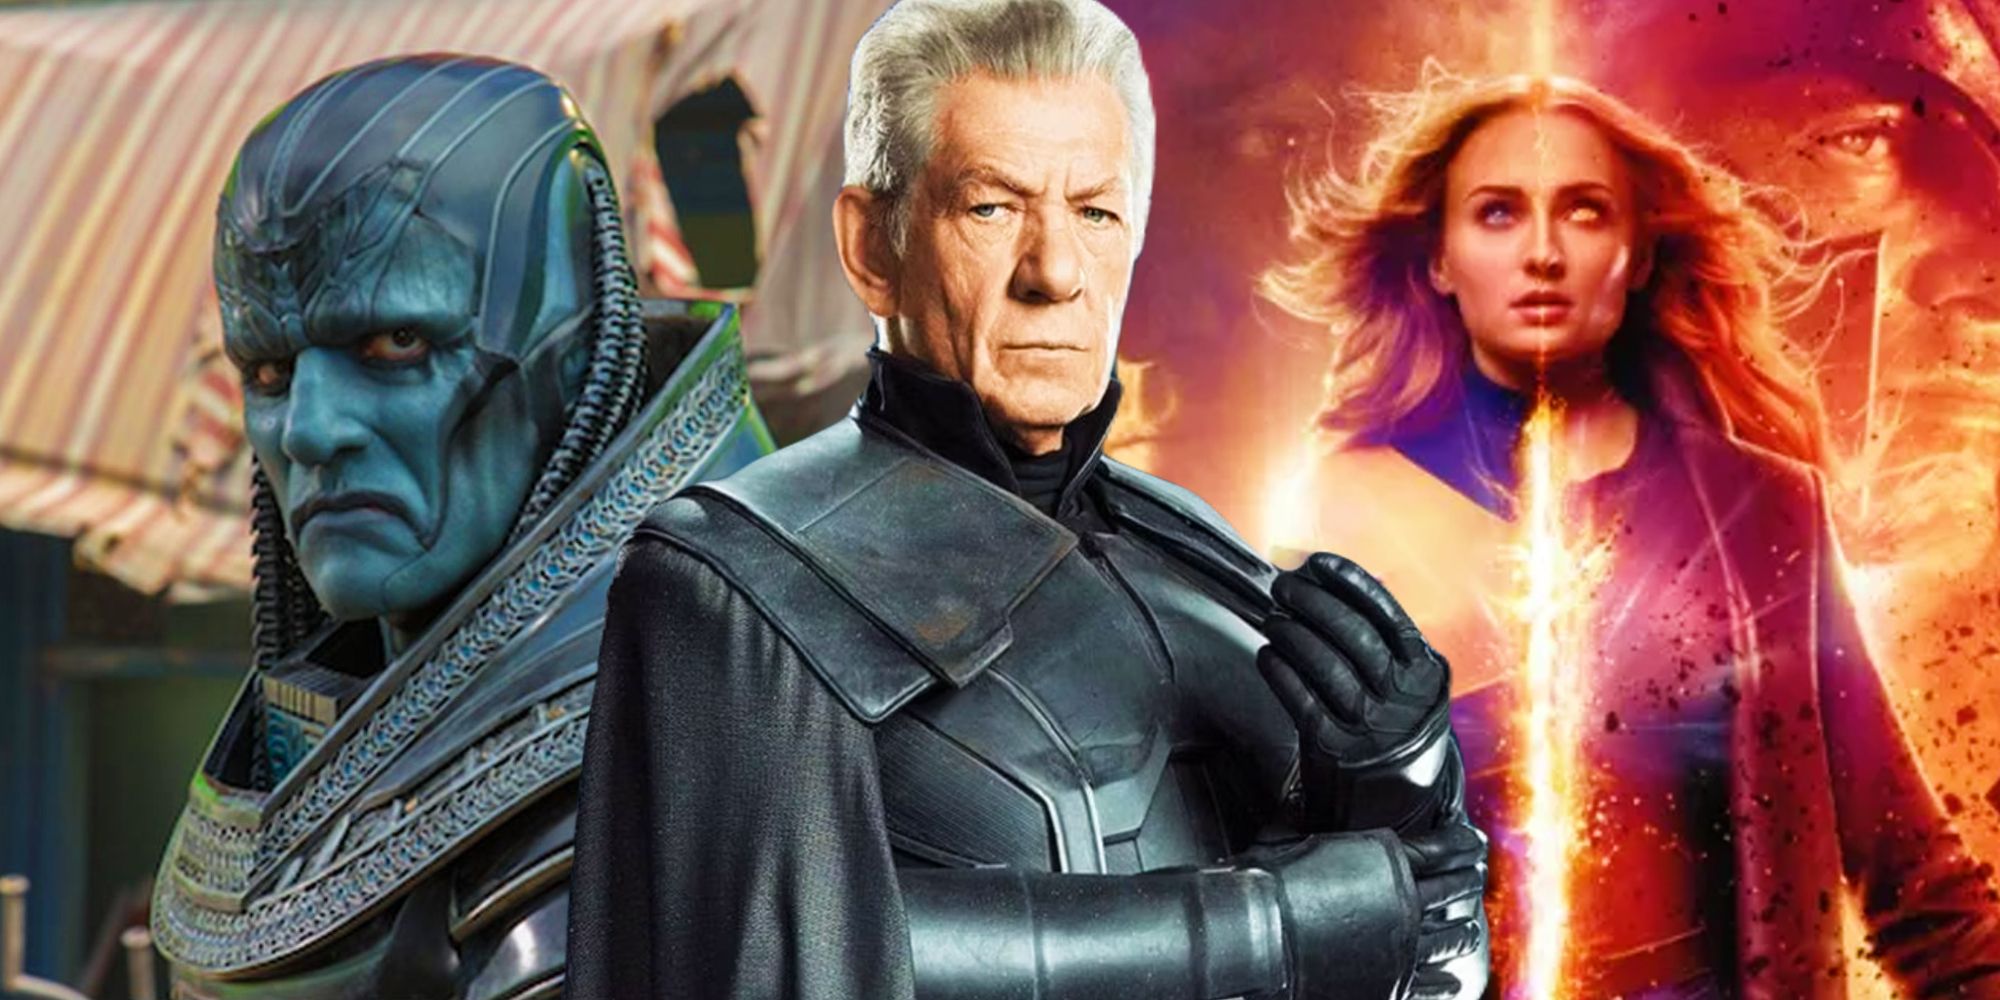 Apocalipsis y Magneto espalda con espalda de las películas de X-Men junto al cartel de Dark Phoenix